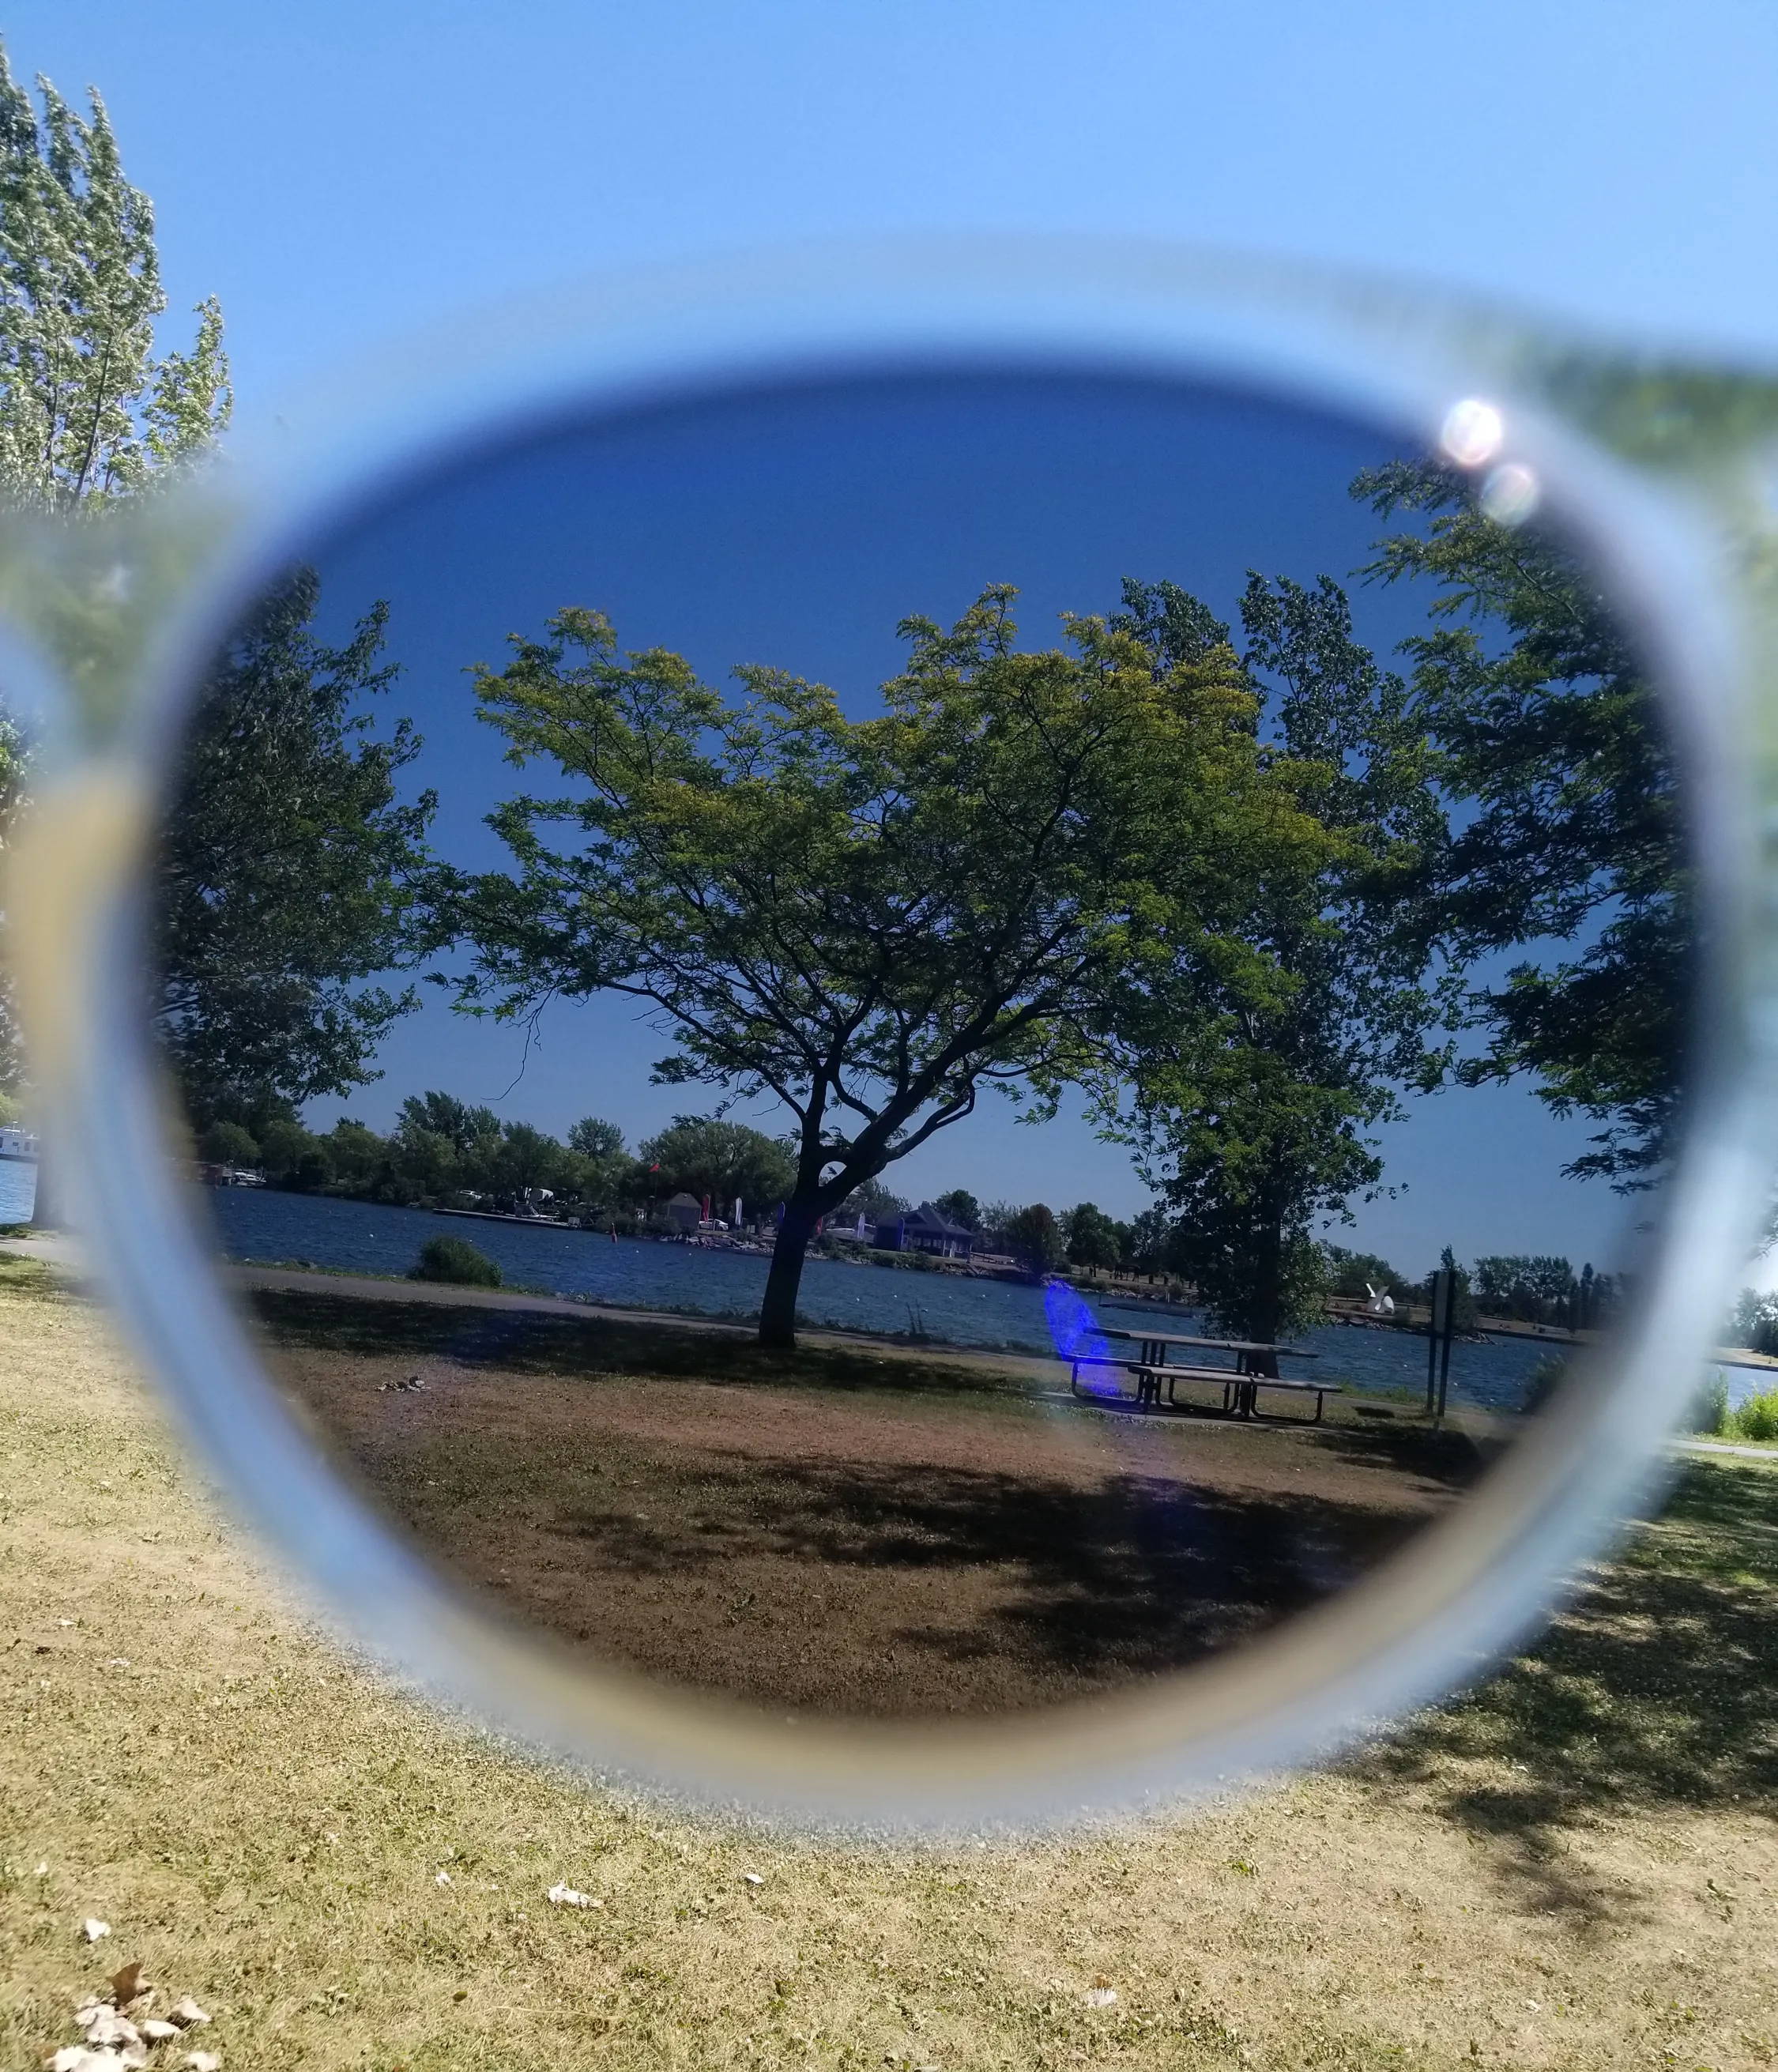 View of nature through polarized lenses